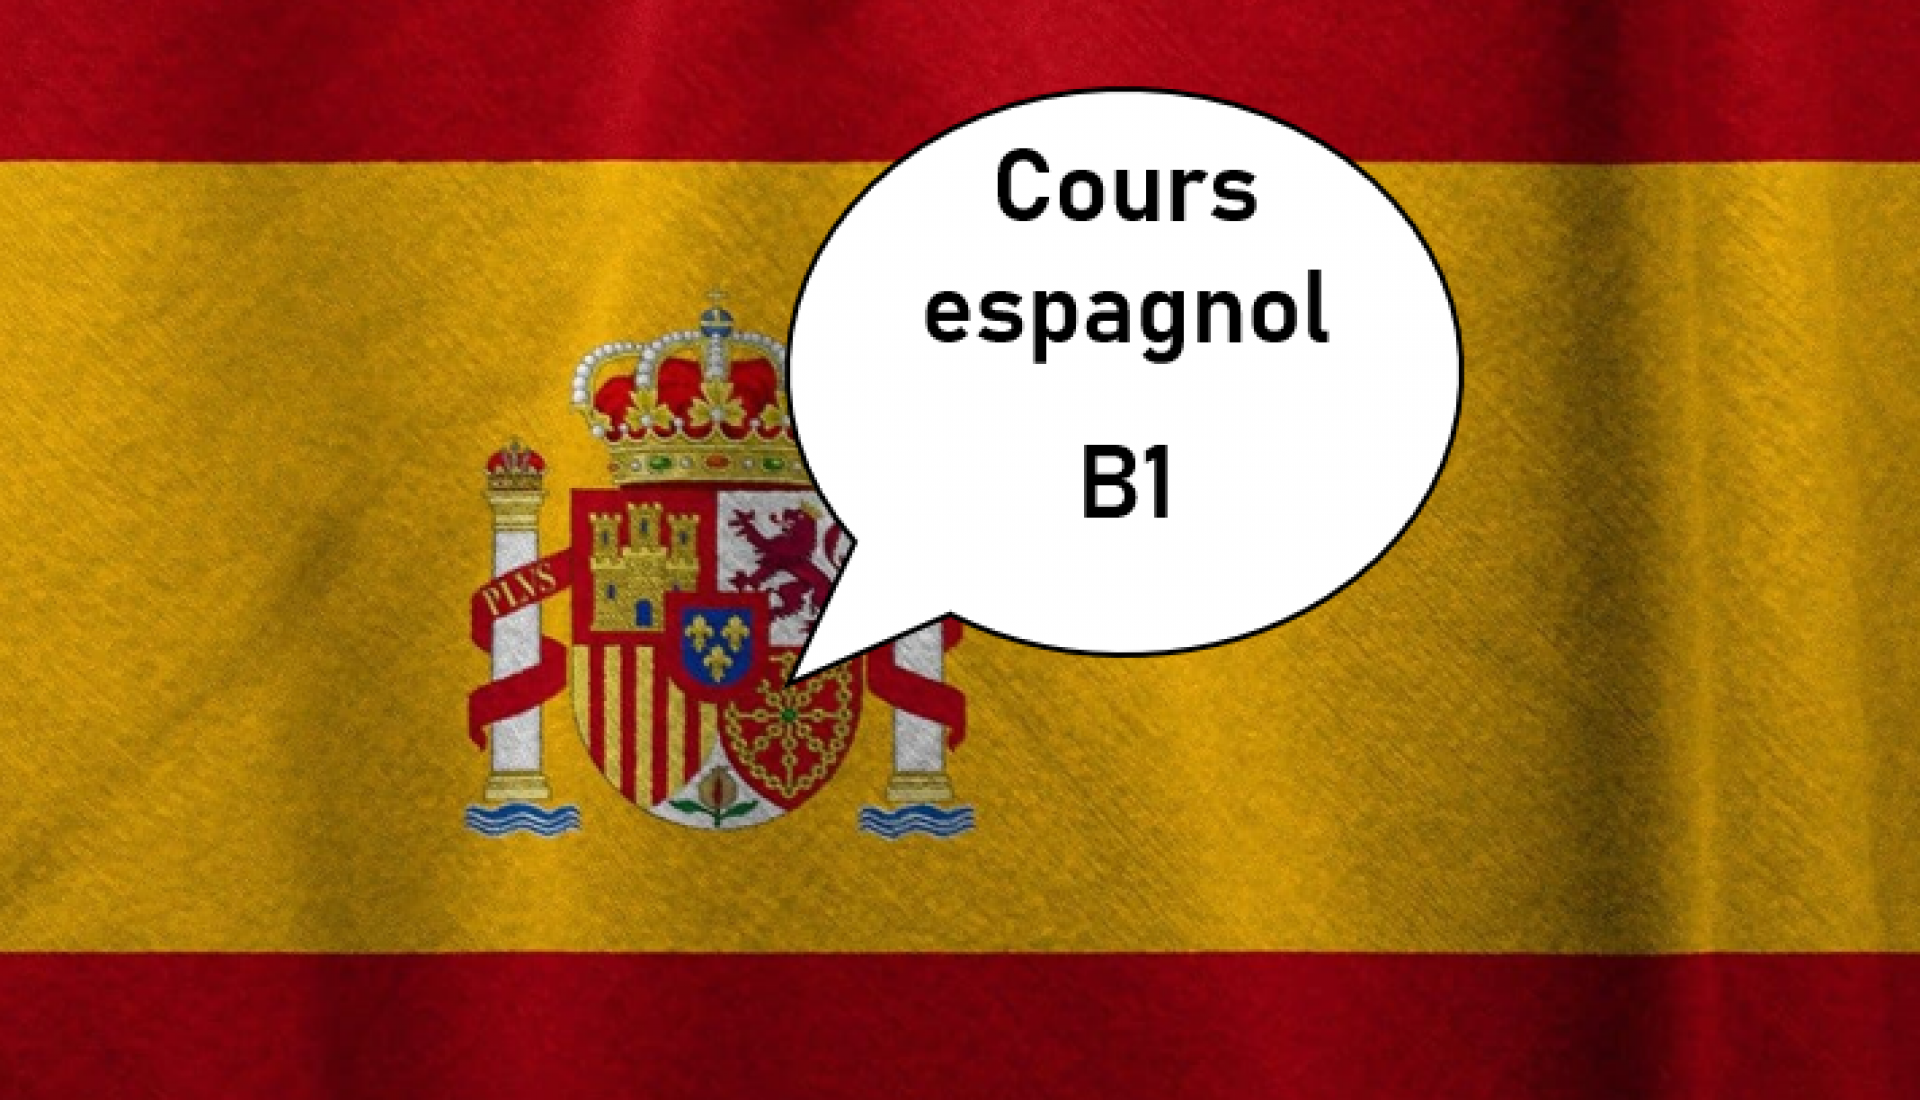 Espagnol B1